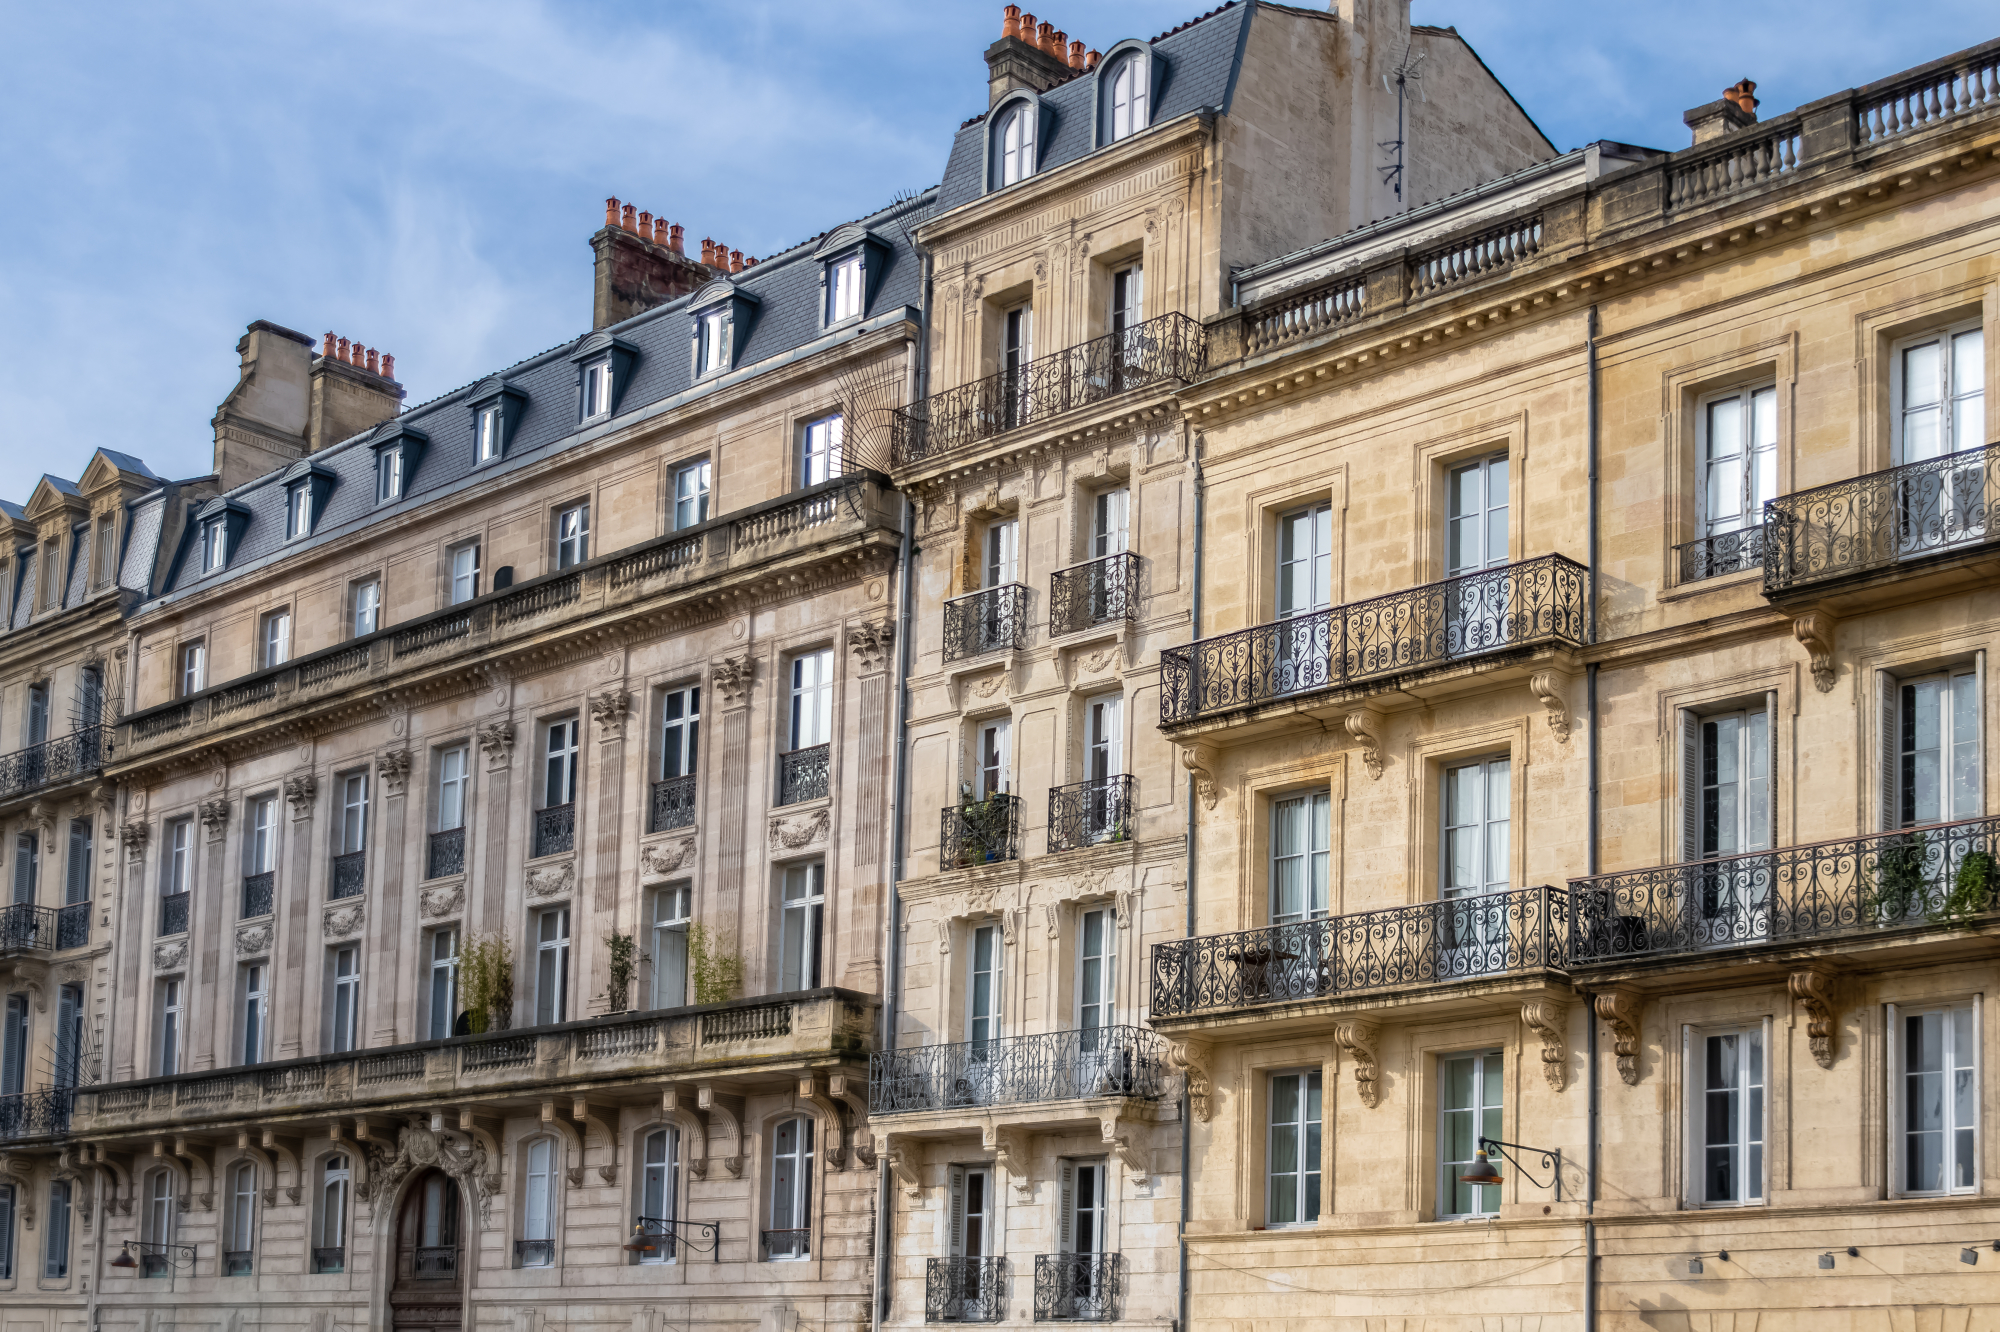 Les façades typiques de Bordeaux et leurs pierres blondes